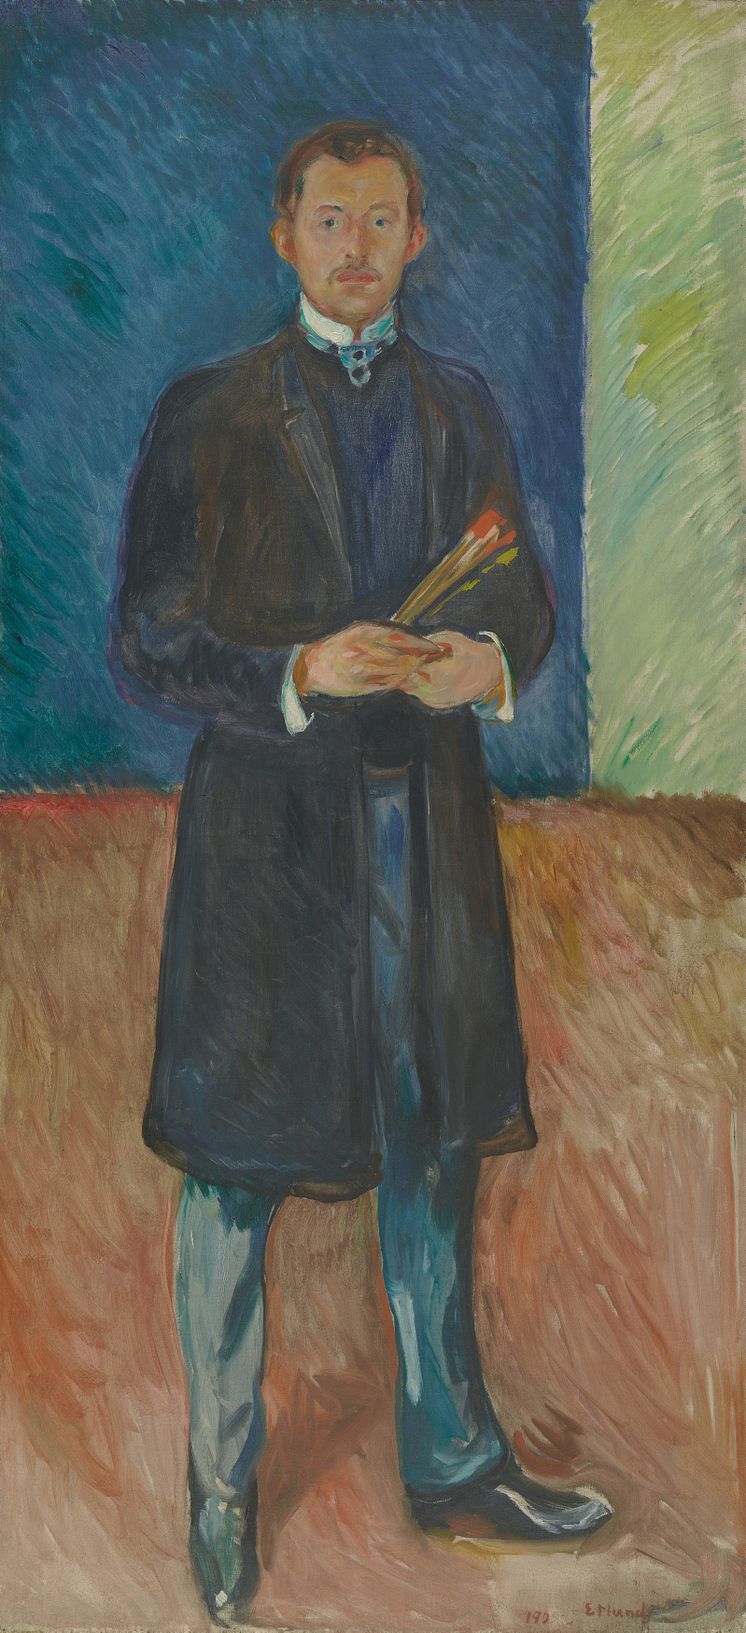  Edvard Munch: Selvportrett med pensler / Self-Portrait with Brushes (1904)